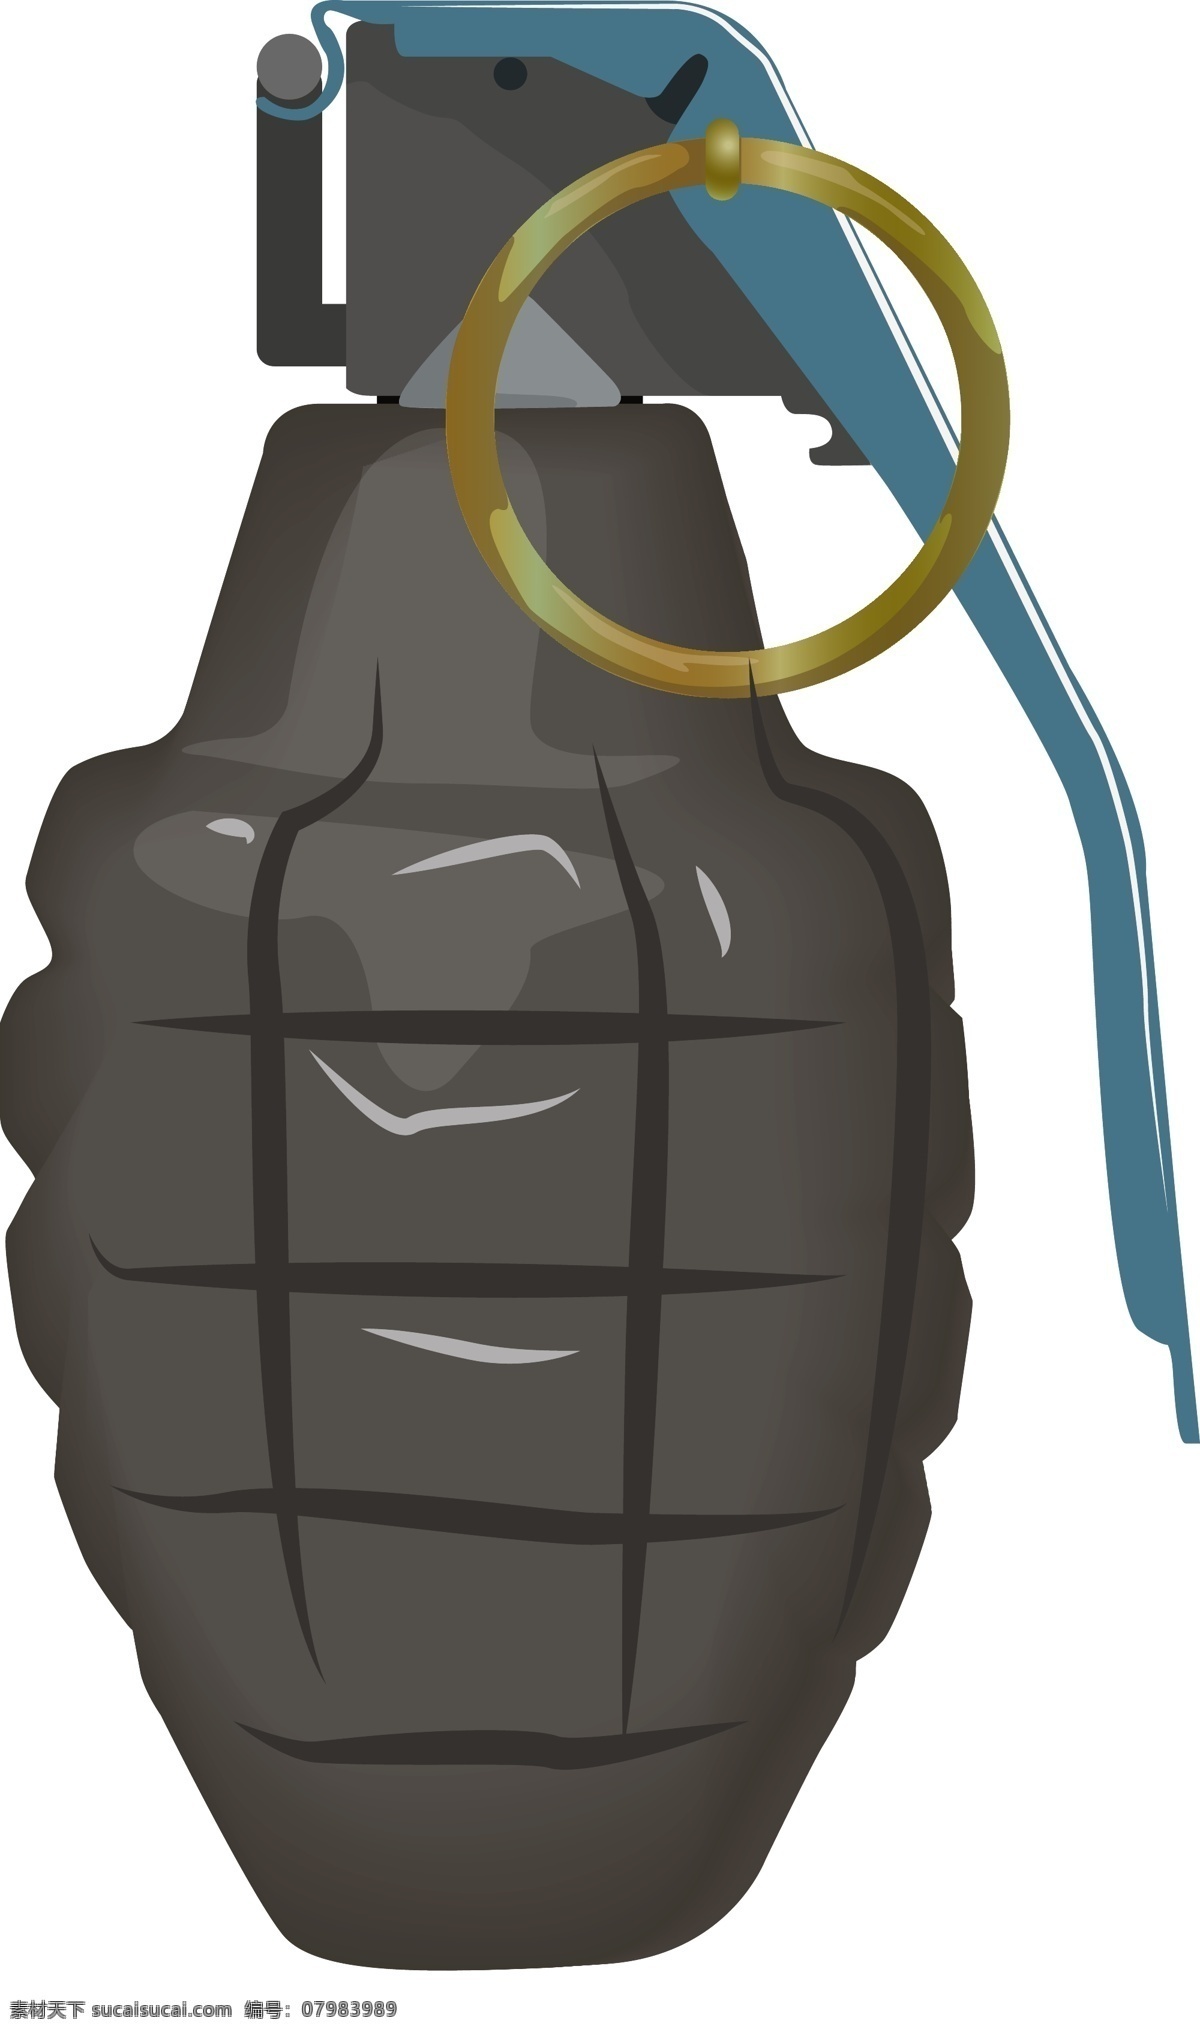 军事 手榴弹 装饰 插画 军事手榴弹 黑色的手榴弹 手榴弹装饰 手榴弹插画 立体手榴弹 卡通手榴弹